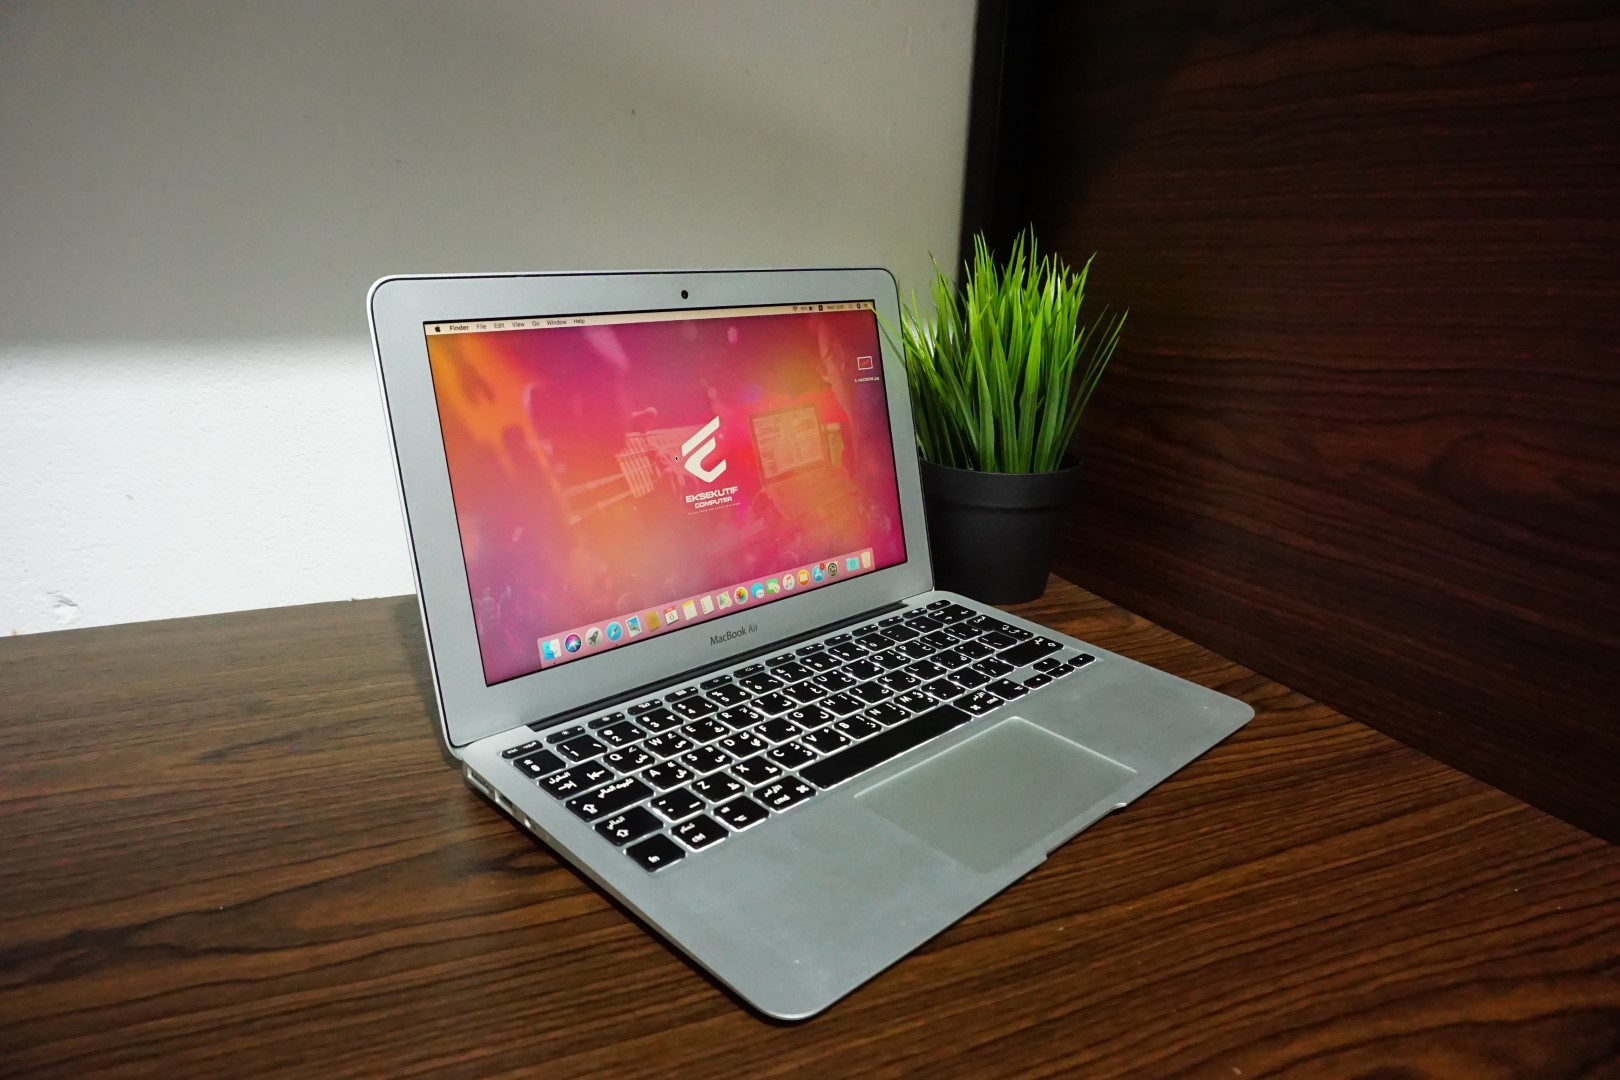 Jual Laptop Macbook Air 11 MD845 Mid 2012